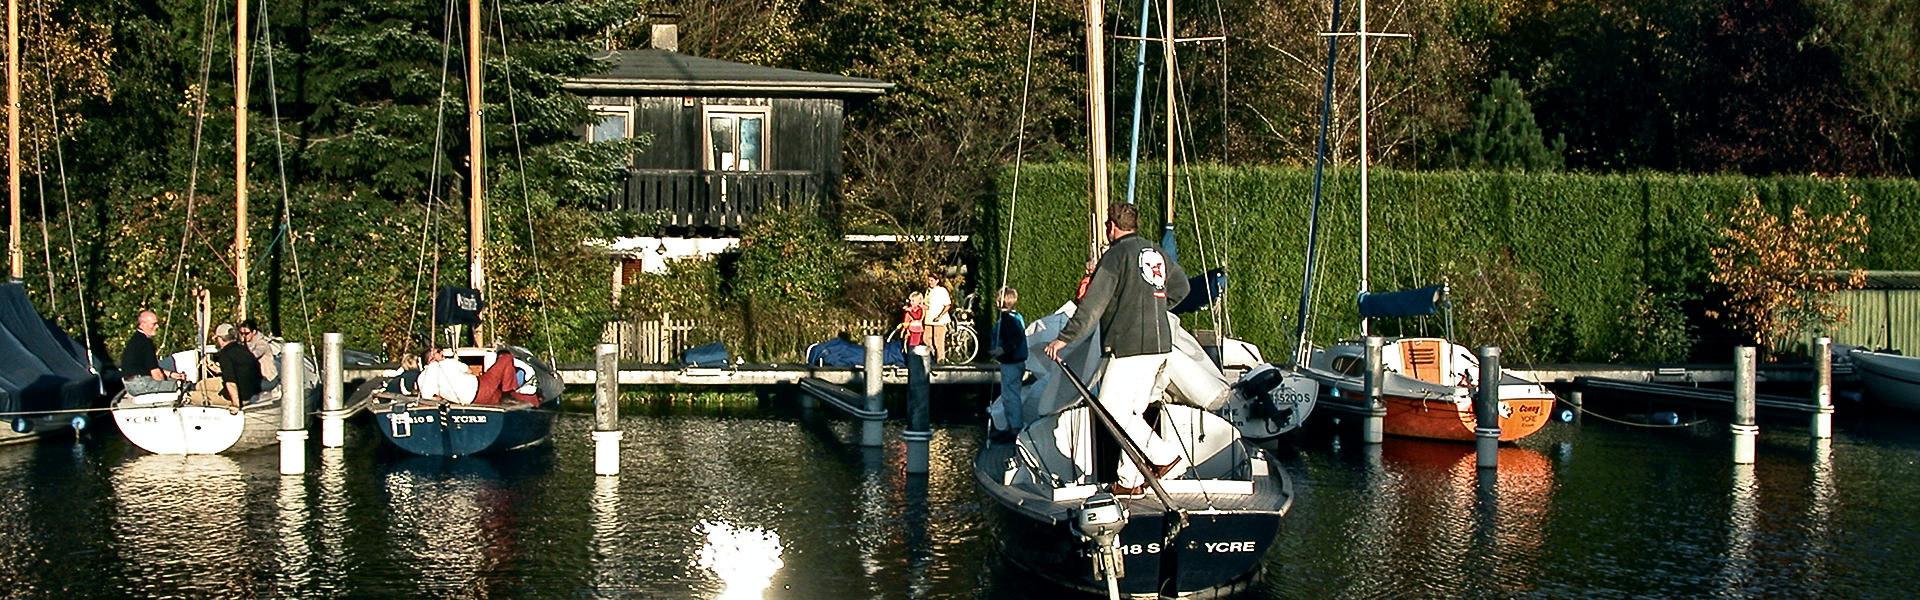 Yachtclub Ruhrland Essen e.V.